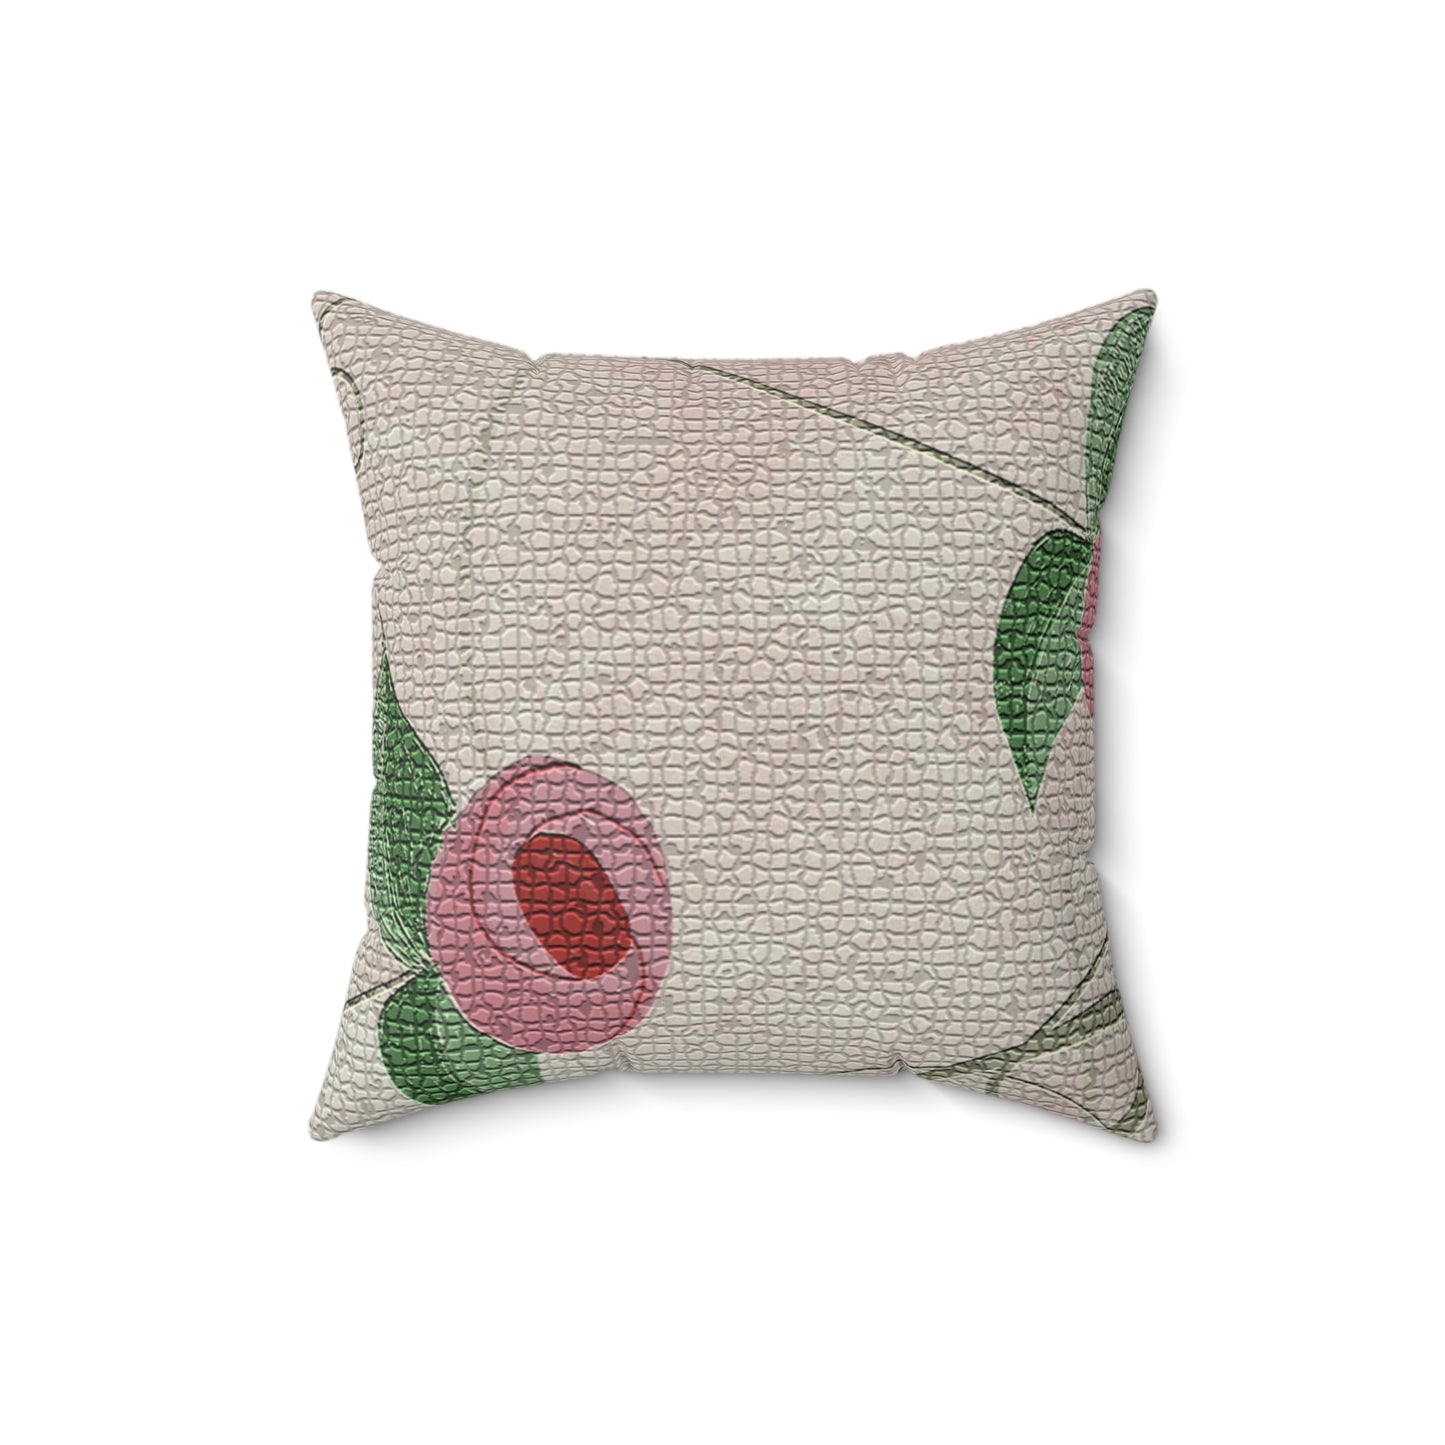 Roses Material Square Pillow - Alja Design